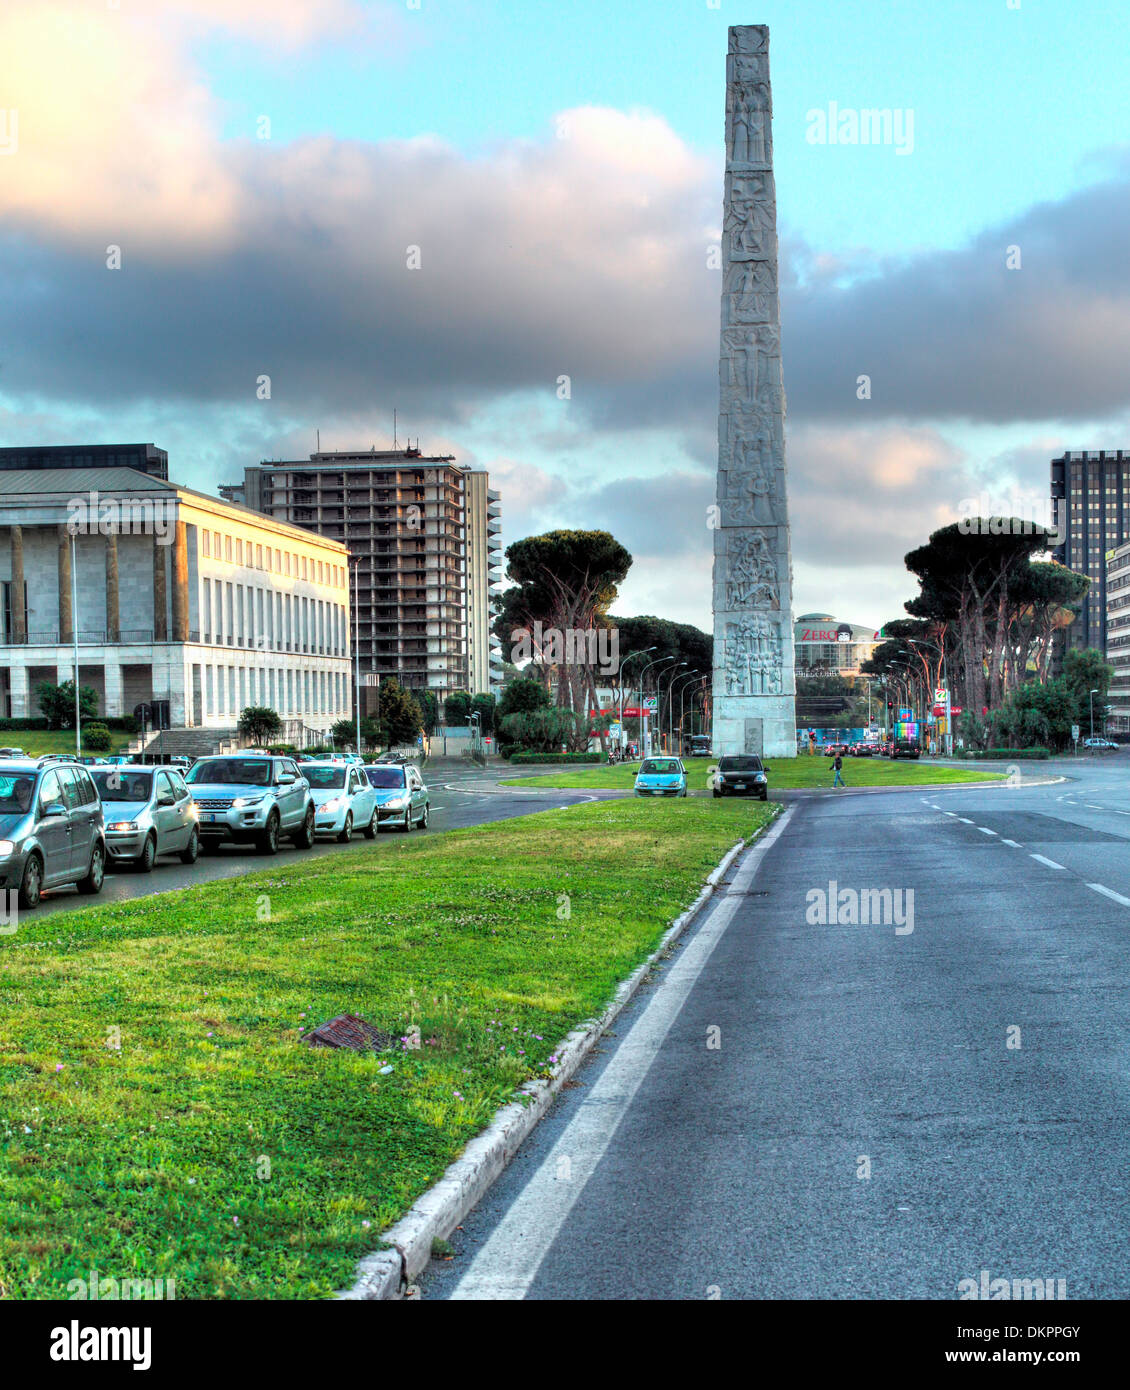 Piazza Guglielmo Marconi, EUR, Rome, Italy Stock Photo